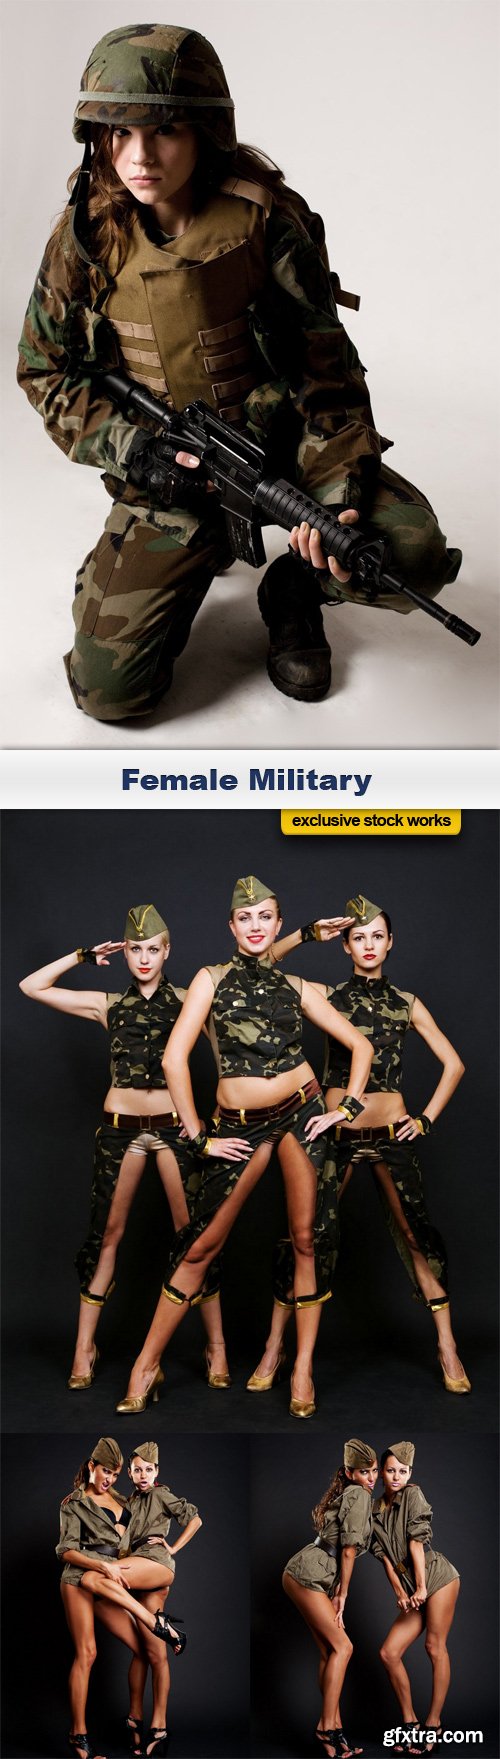 Female Military - 4 UHQ JPEG